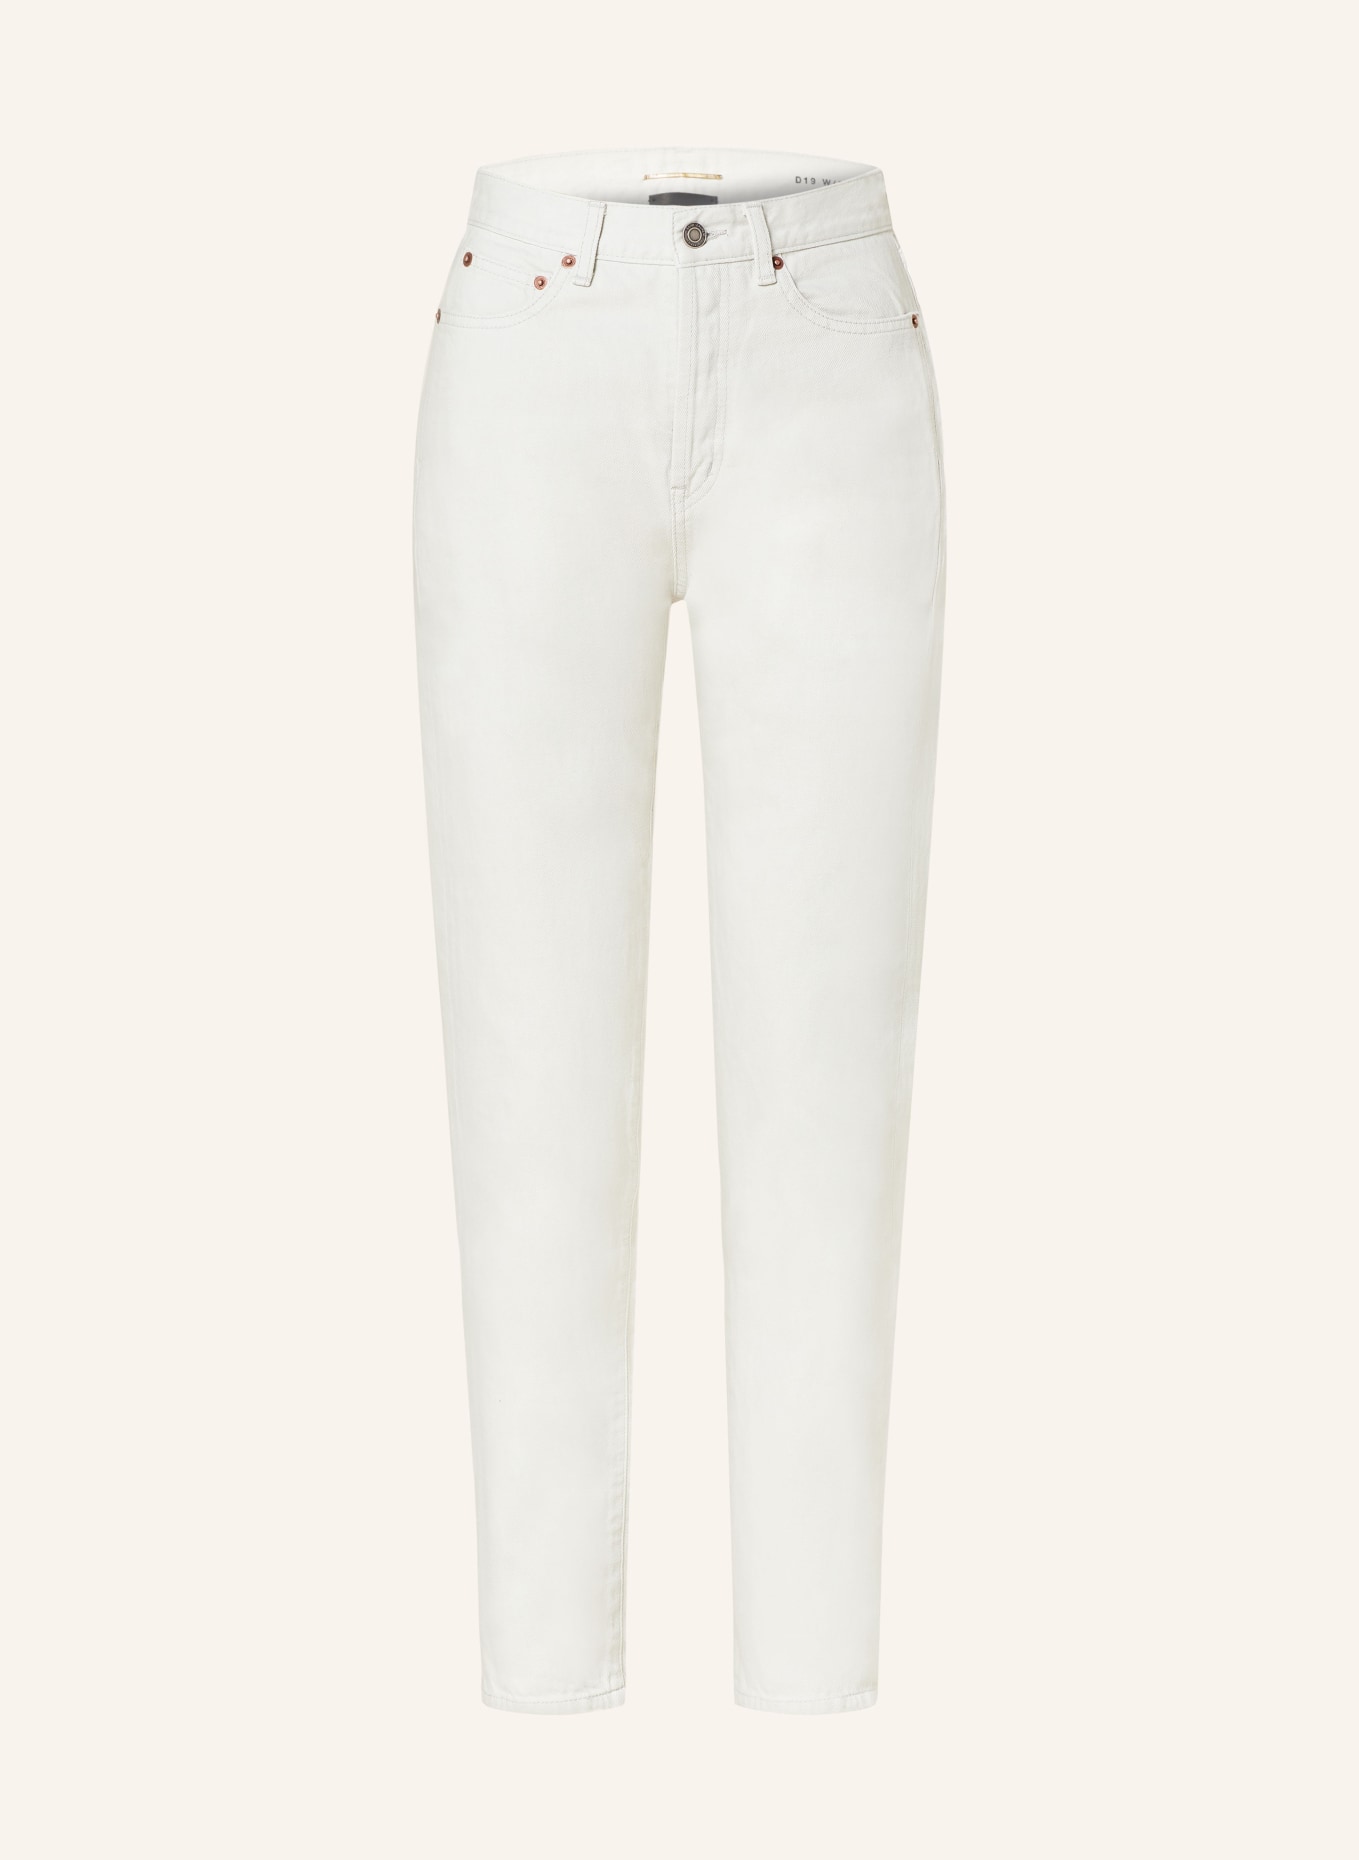 SAINT LAURENT Skinny Jeans, Farbe: 9771 CHALK WHITE (Bild 1)